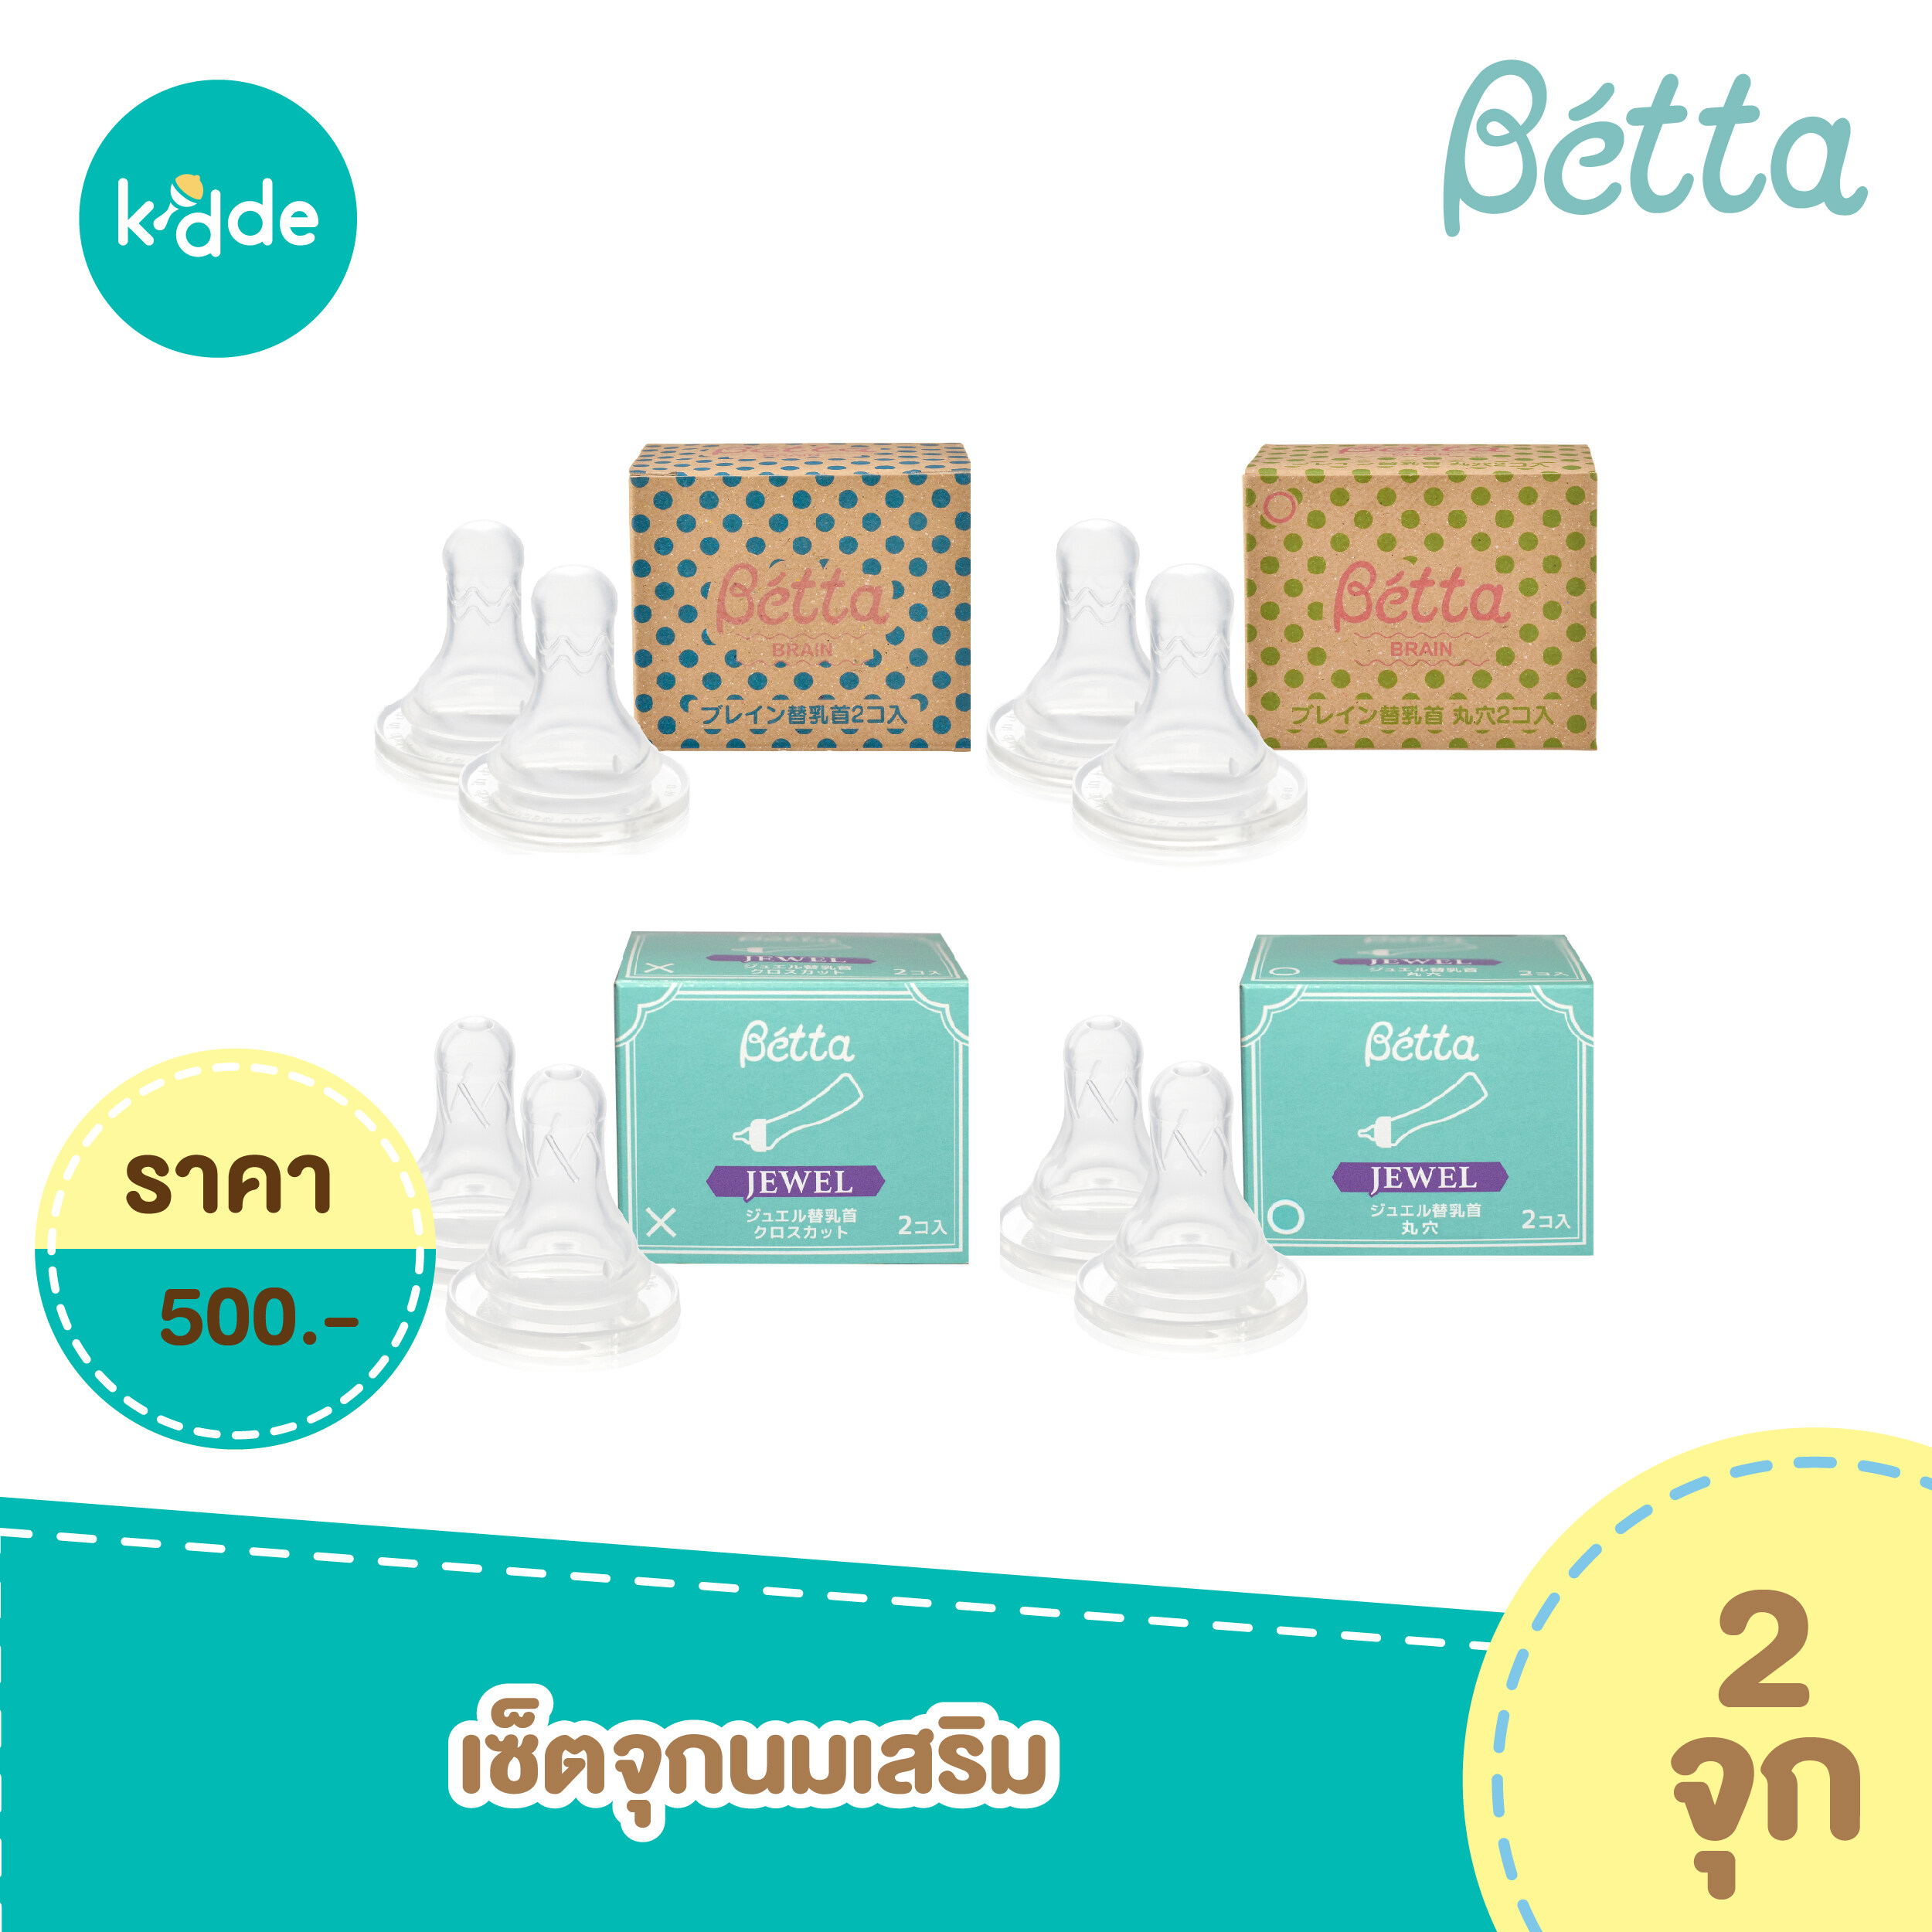 จุกนม Dr.Betta - Replacement Nipple set